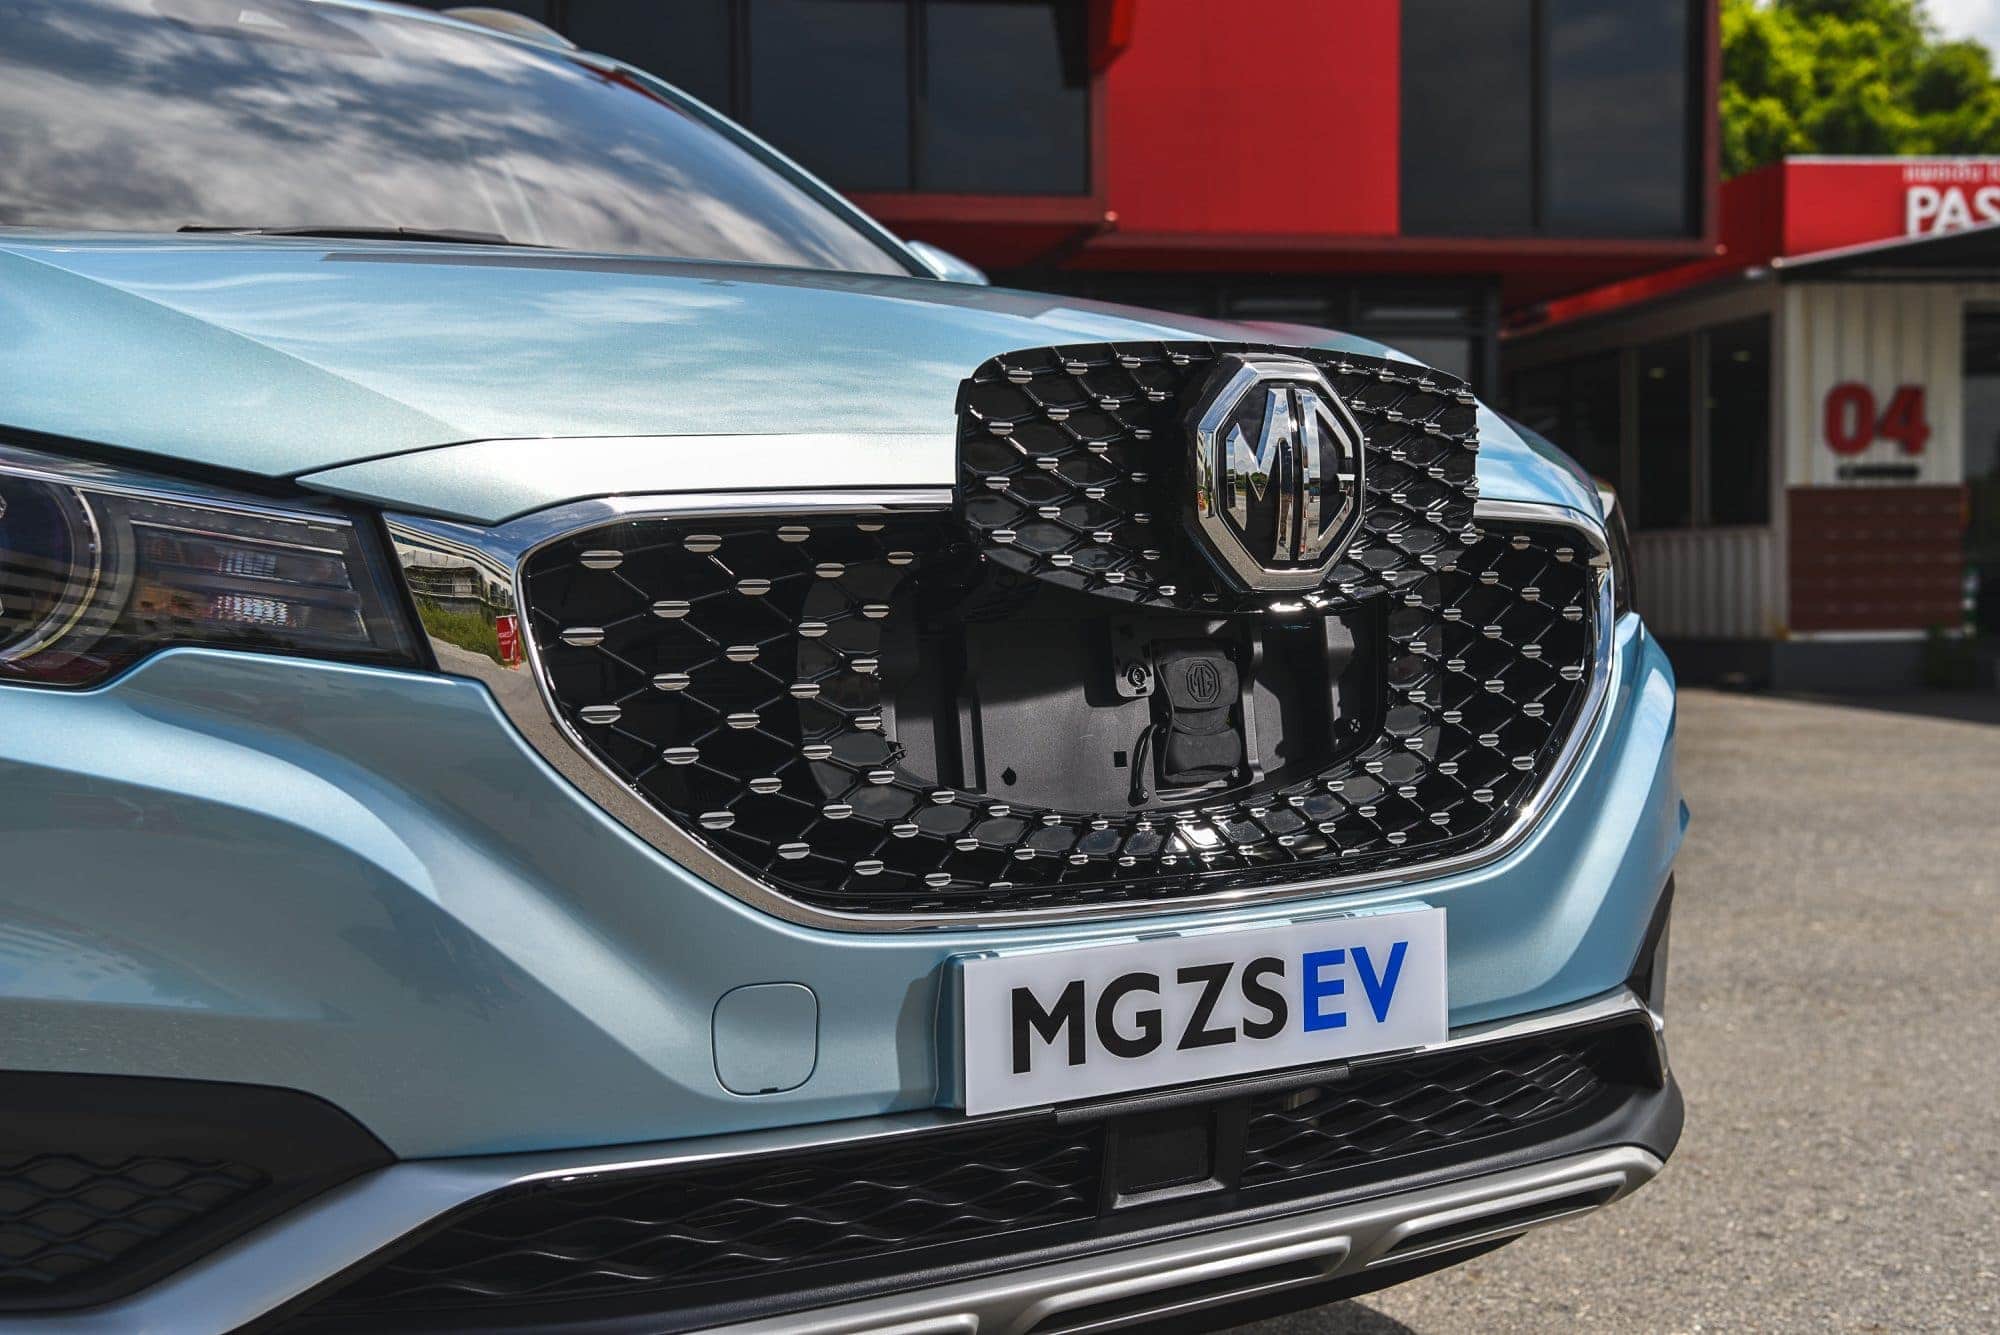 โลกสวยด้วยรถเรา MG ประเทศไทยเปิดตัว MG ZS EV รถยนต์ SUV พลังงานไฟฟ้าล้วน ราคา 1,190,000 บาท 7